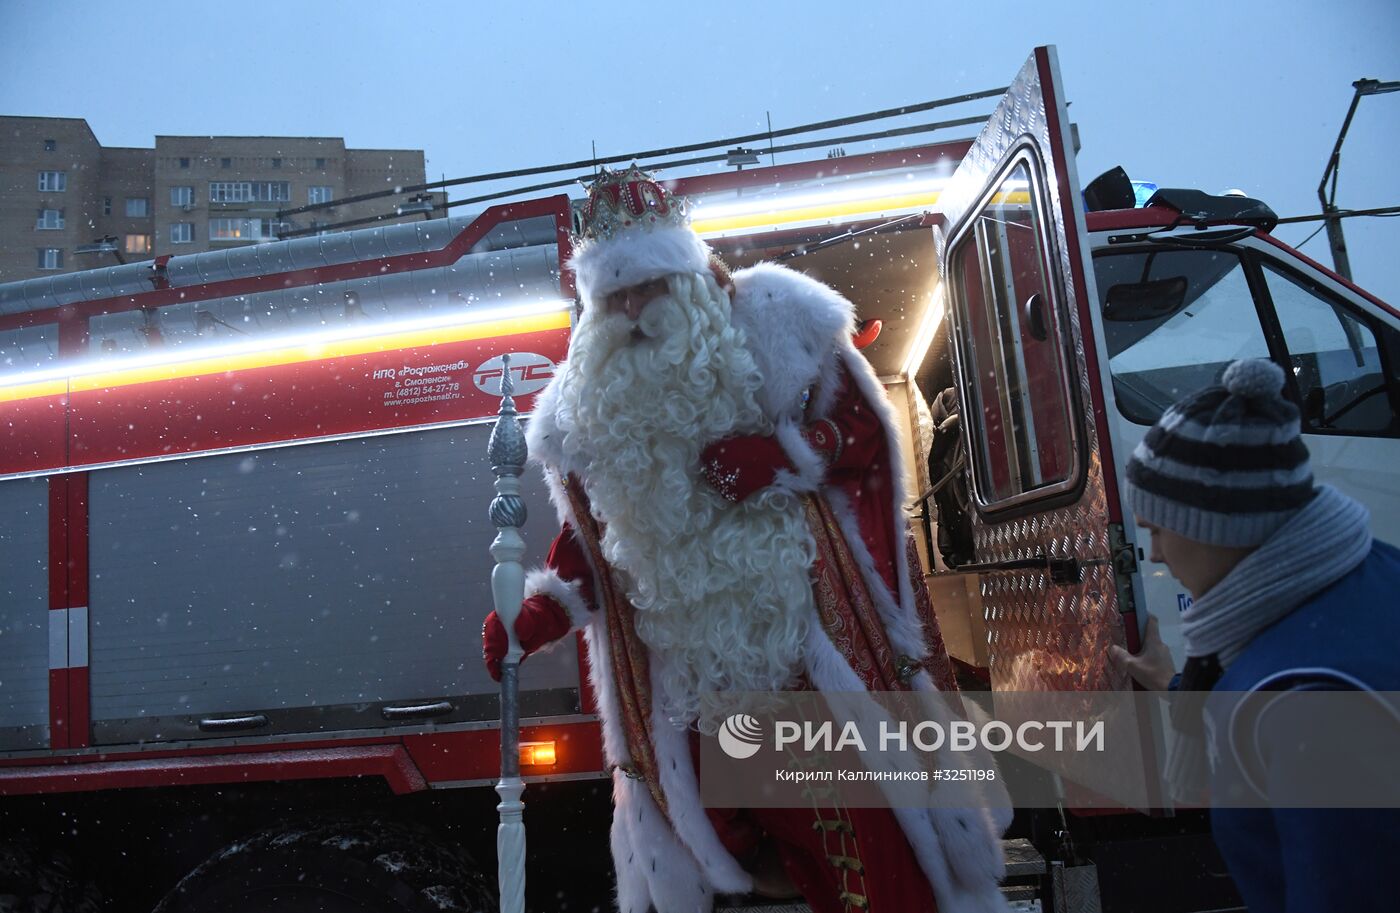 Пресс-конференция Деда Мороза в Москве